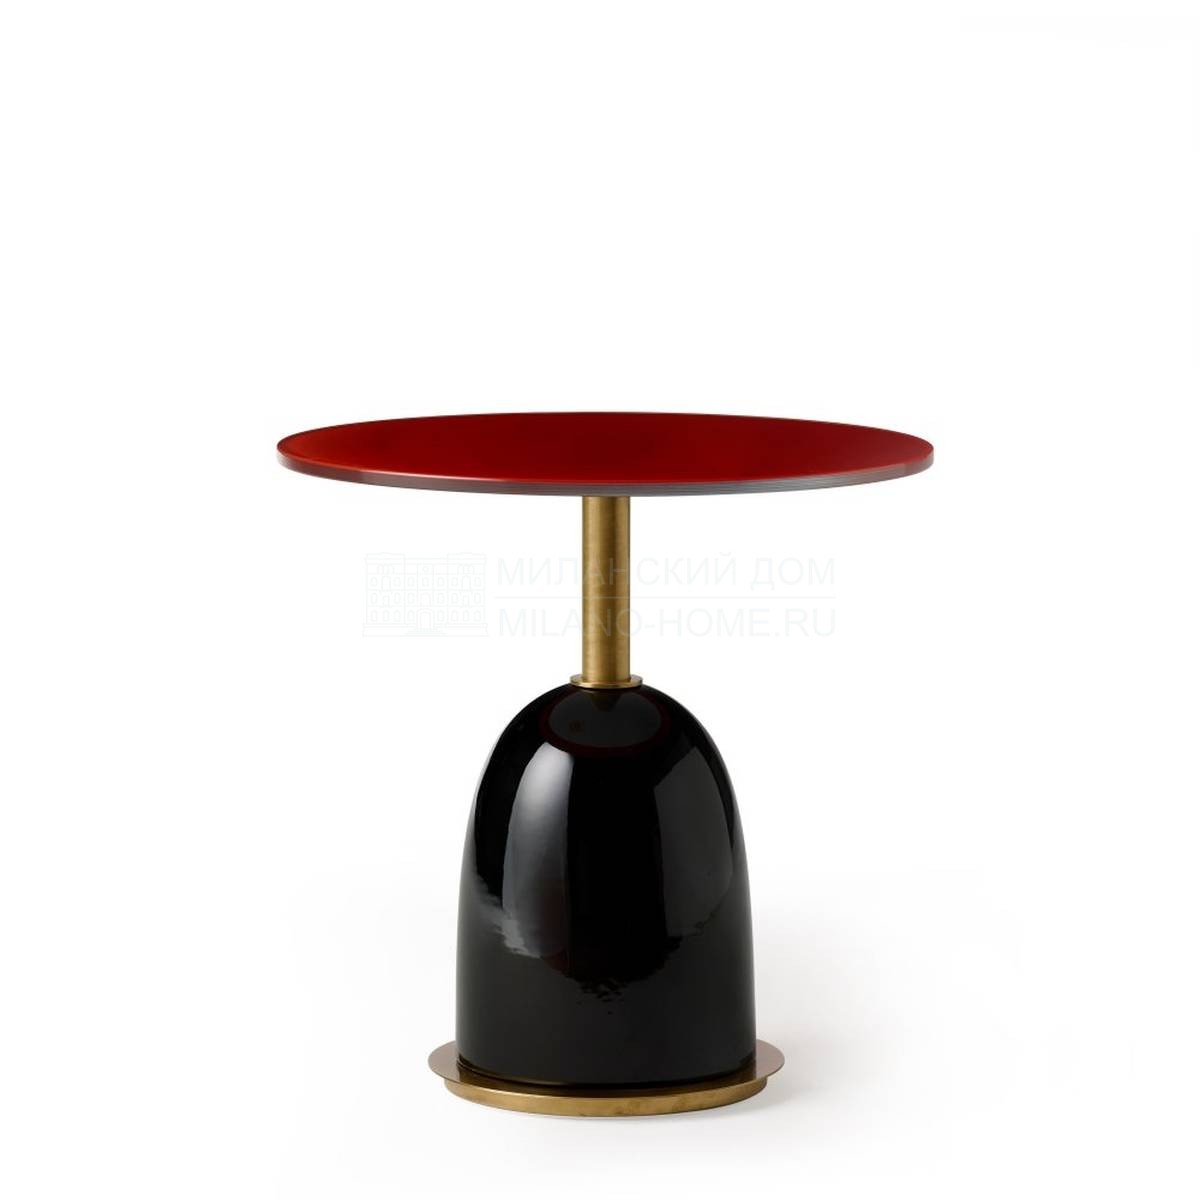 Кофейный столик Pins side table из Италии фабрики MARIONI